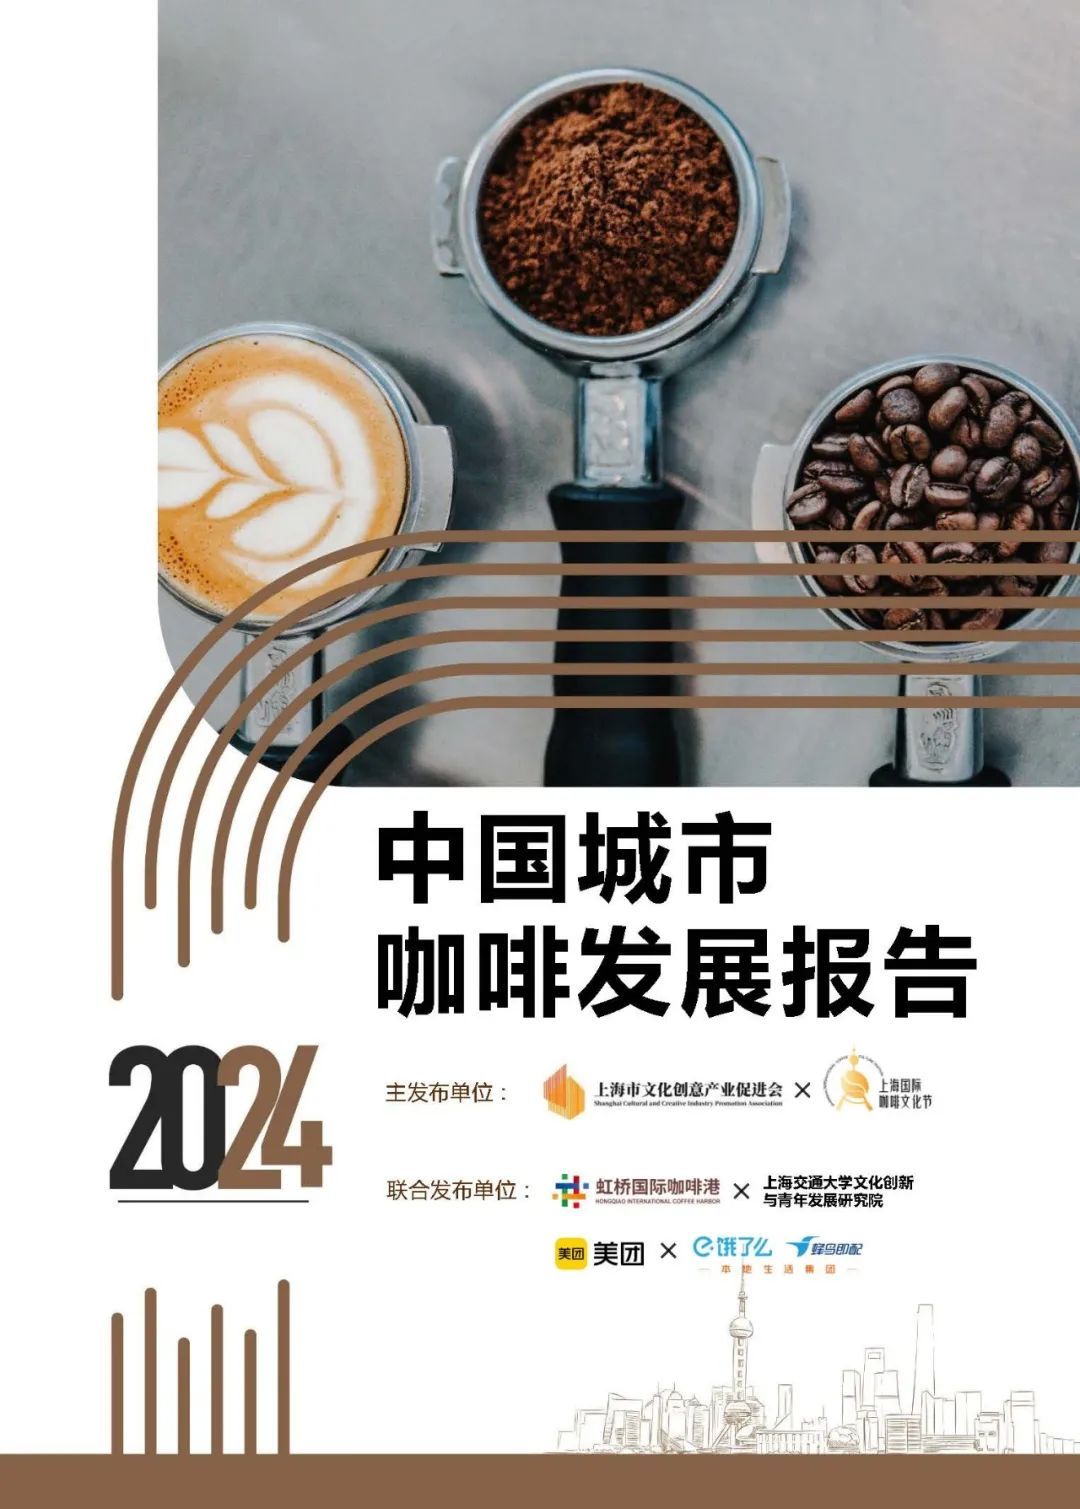 上海咖啡店数量达9553家，中国咖啡市场持续增长